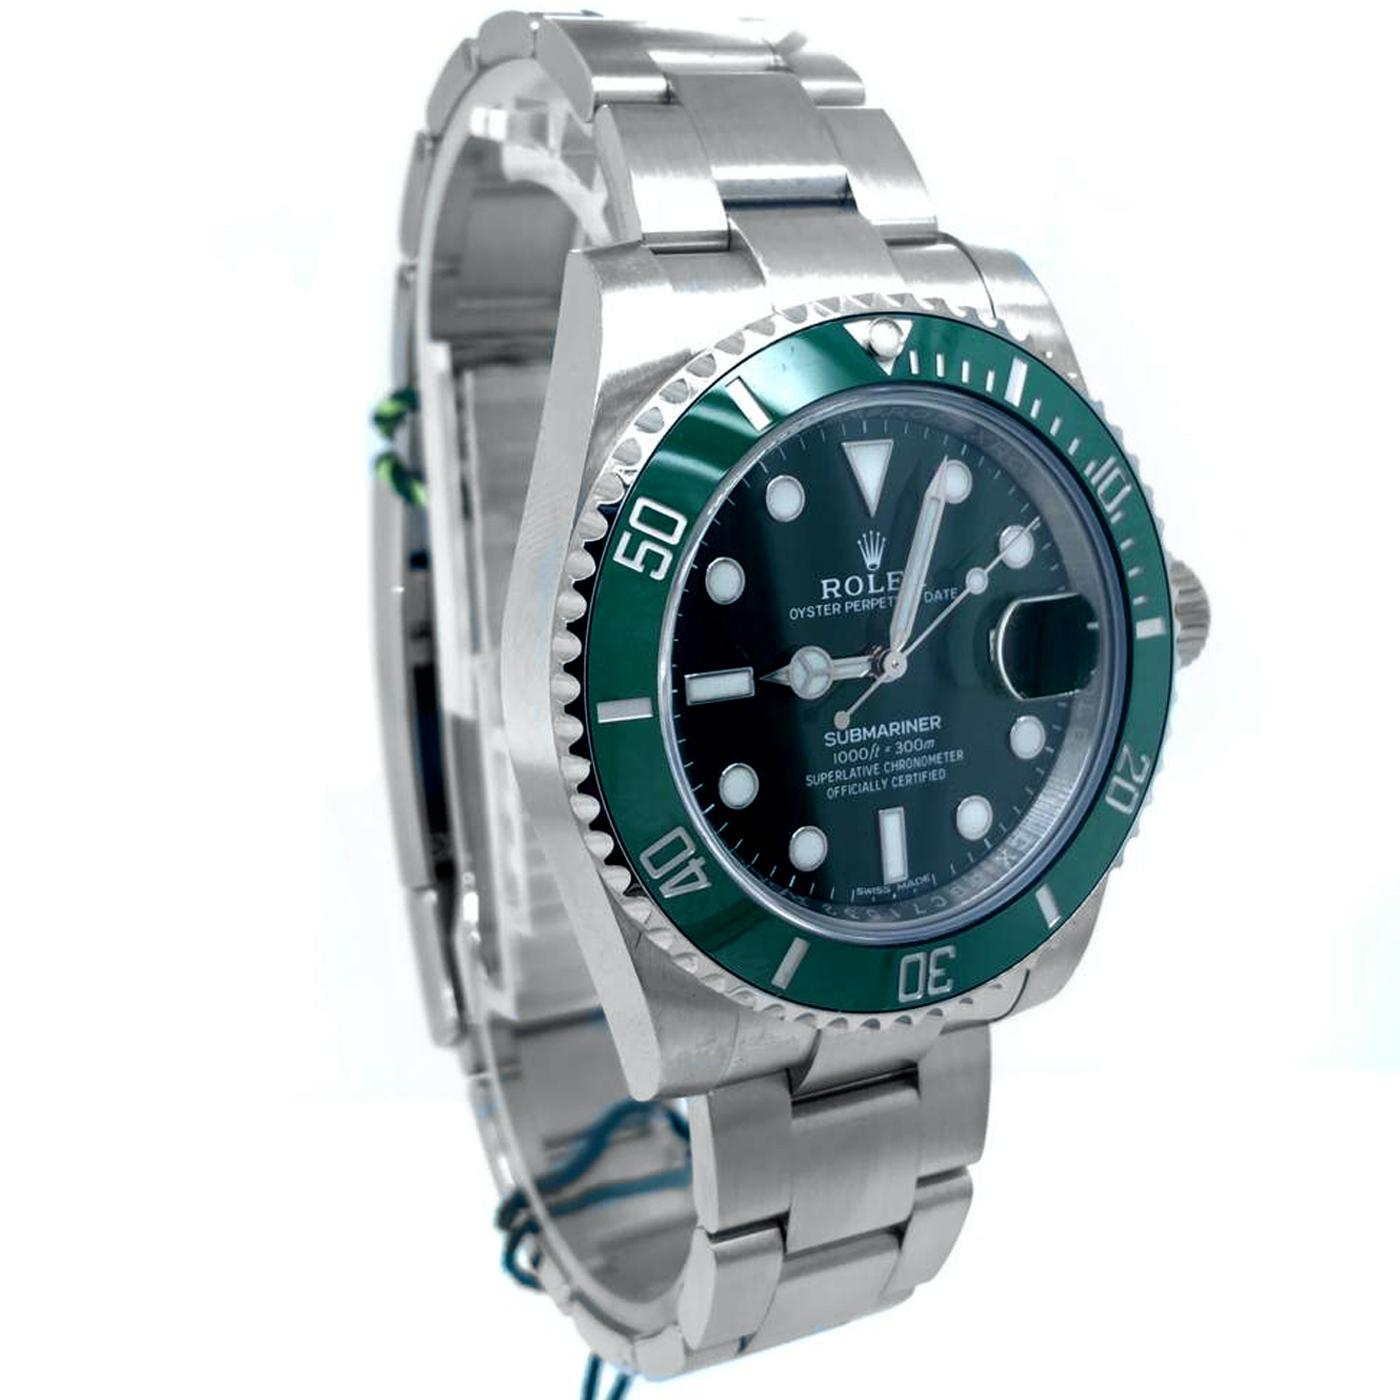 rolex submariner date hulk oystersteel men's watch 116610lv - green